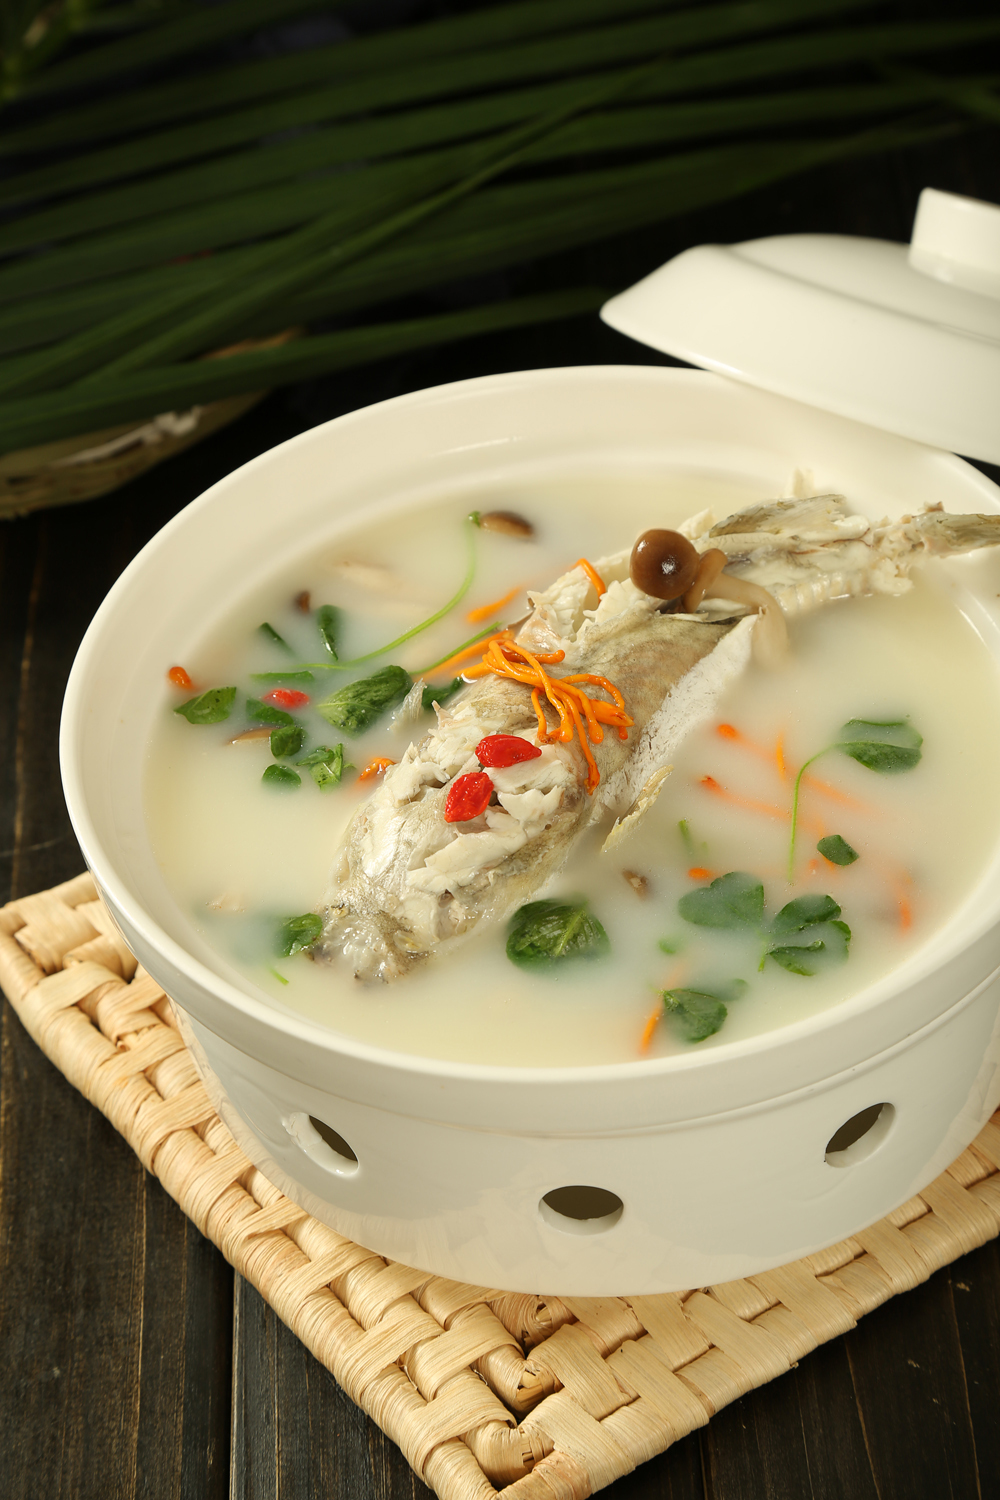 在烹饪上吸收了明清时期经典河豚菜肴红烧河豚的做法,菜品汤汁浓厚